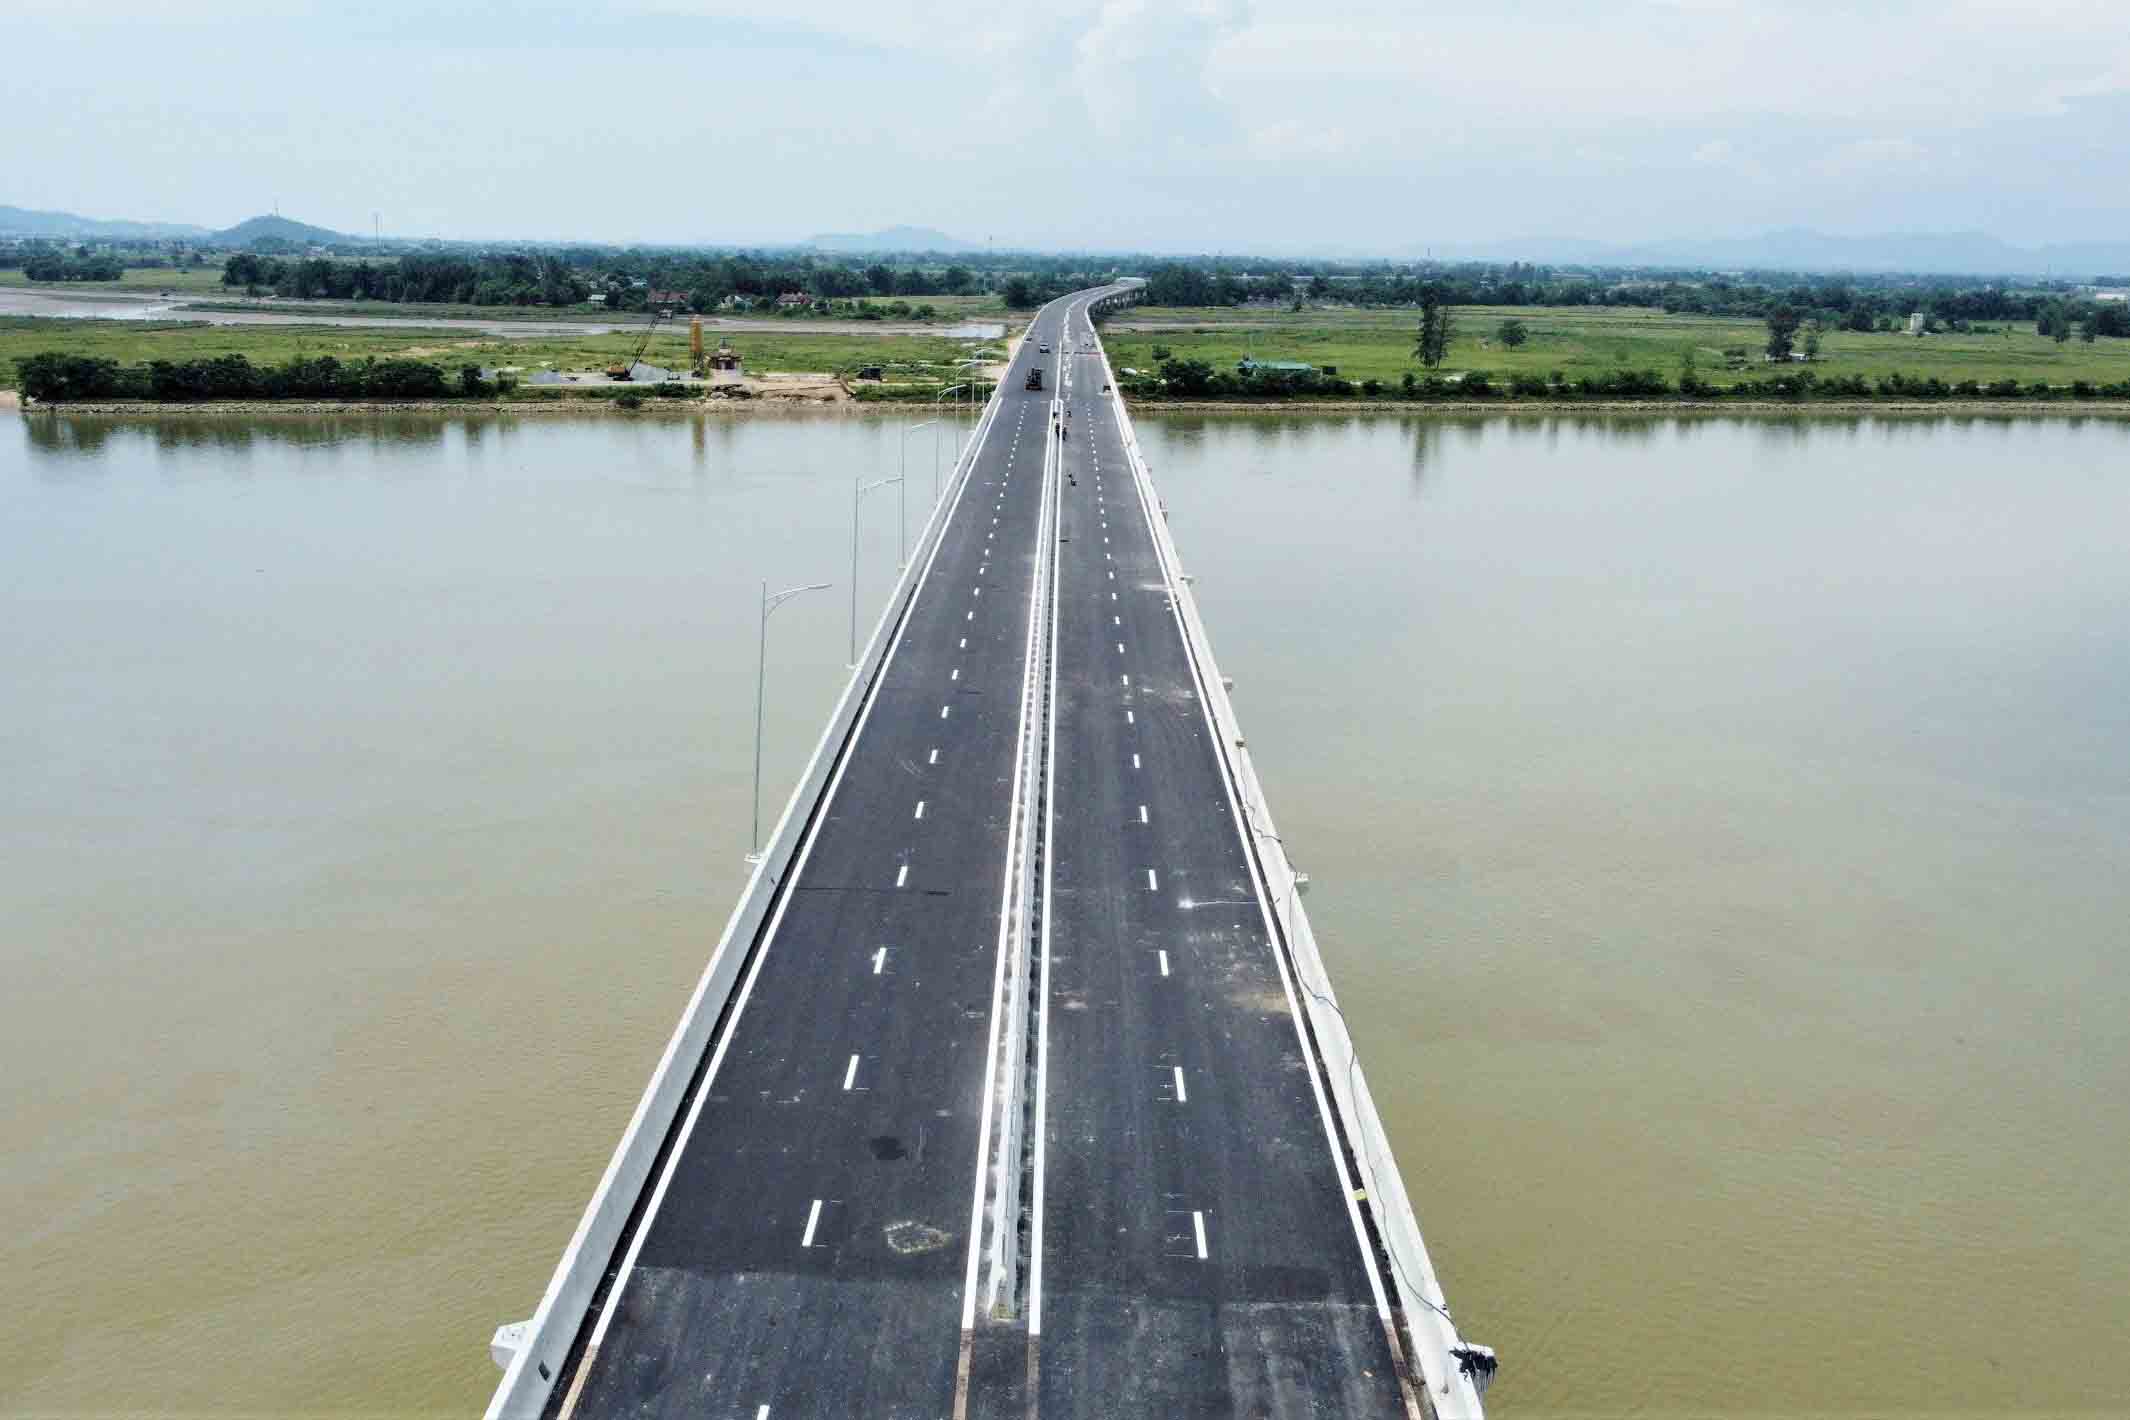 Cầu Hưng Đức thuộc Dự án cao tốc Bắc - Nam giai đoạn 2017 - 2020 thuộc đoạn Diễn Châu - Bãi Vọt. Tuy nhiên, do chậm tiến độ nên đến nay sắp hoàn thành, chuẩn bị thông xe. Ảnh: Trần Tuấn.